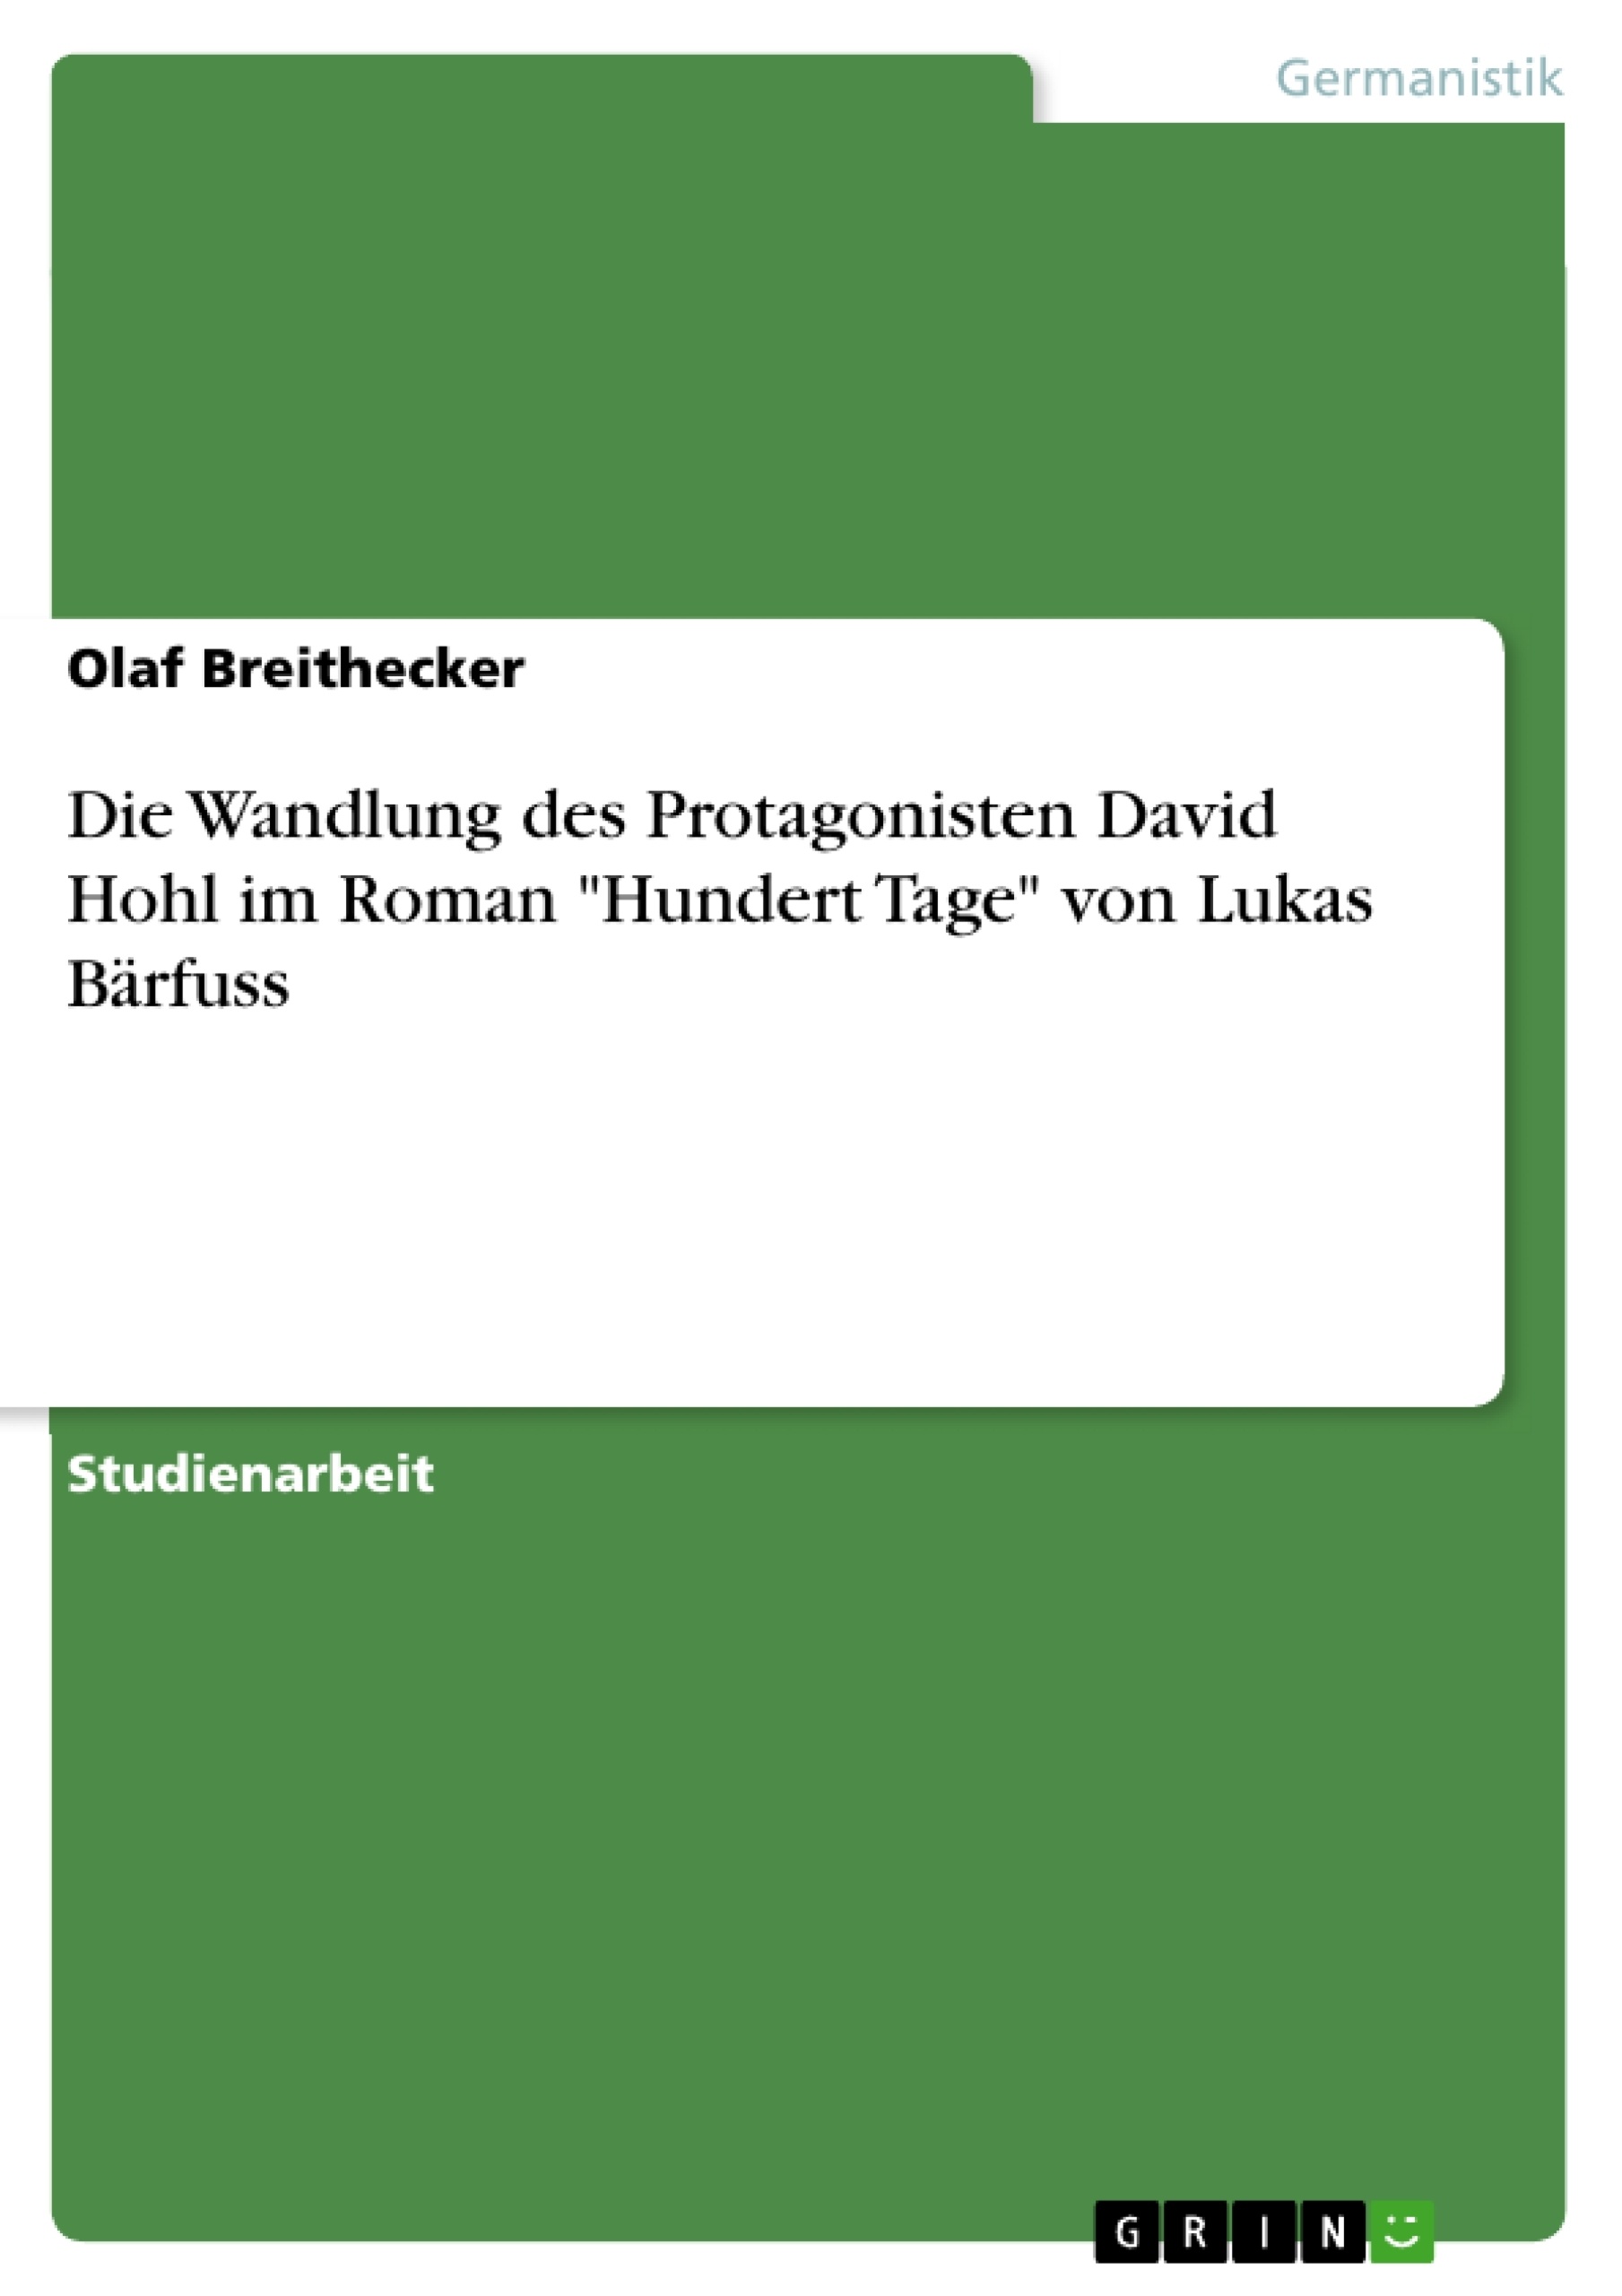 Título: Die Wandlung des Protagonisten David Hohl im Roman "Hundert Tage" von Lukas Bärfuss